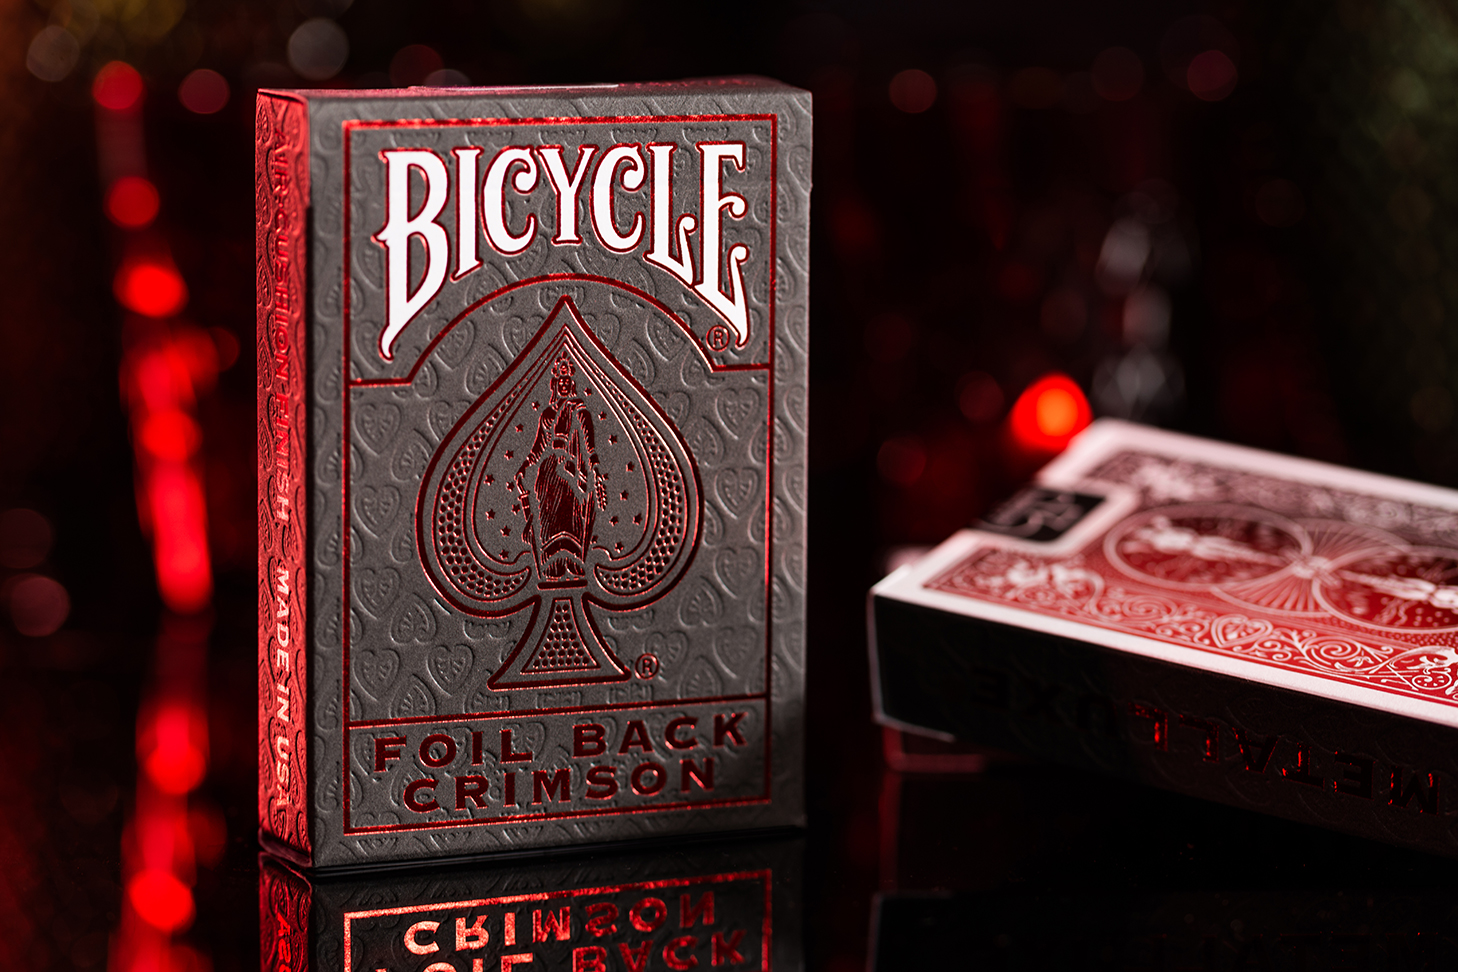 Eine Bicycle Ultimates Foil Back Crimson Red Kartenschachtel steht mit sichtbarer Vorderseite vor einem dunklem Hintergrund und wird rot beleuchtet. Eine weitere Schachtel liegt mit sichtbarer Rückseite daneben.